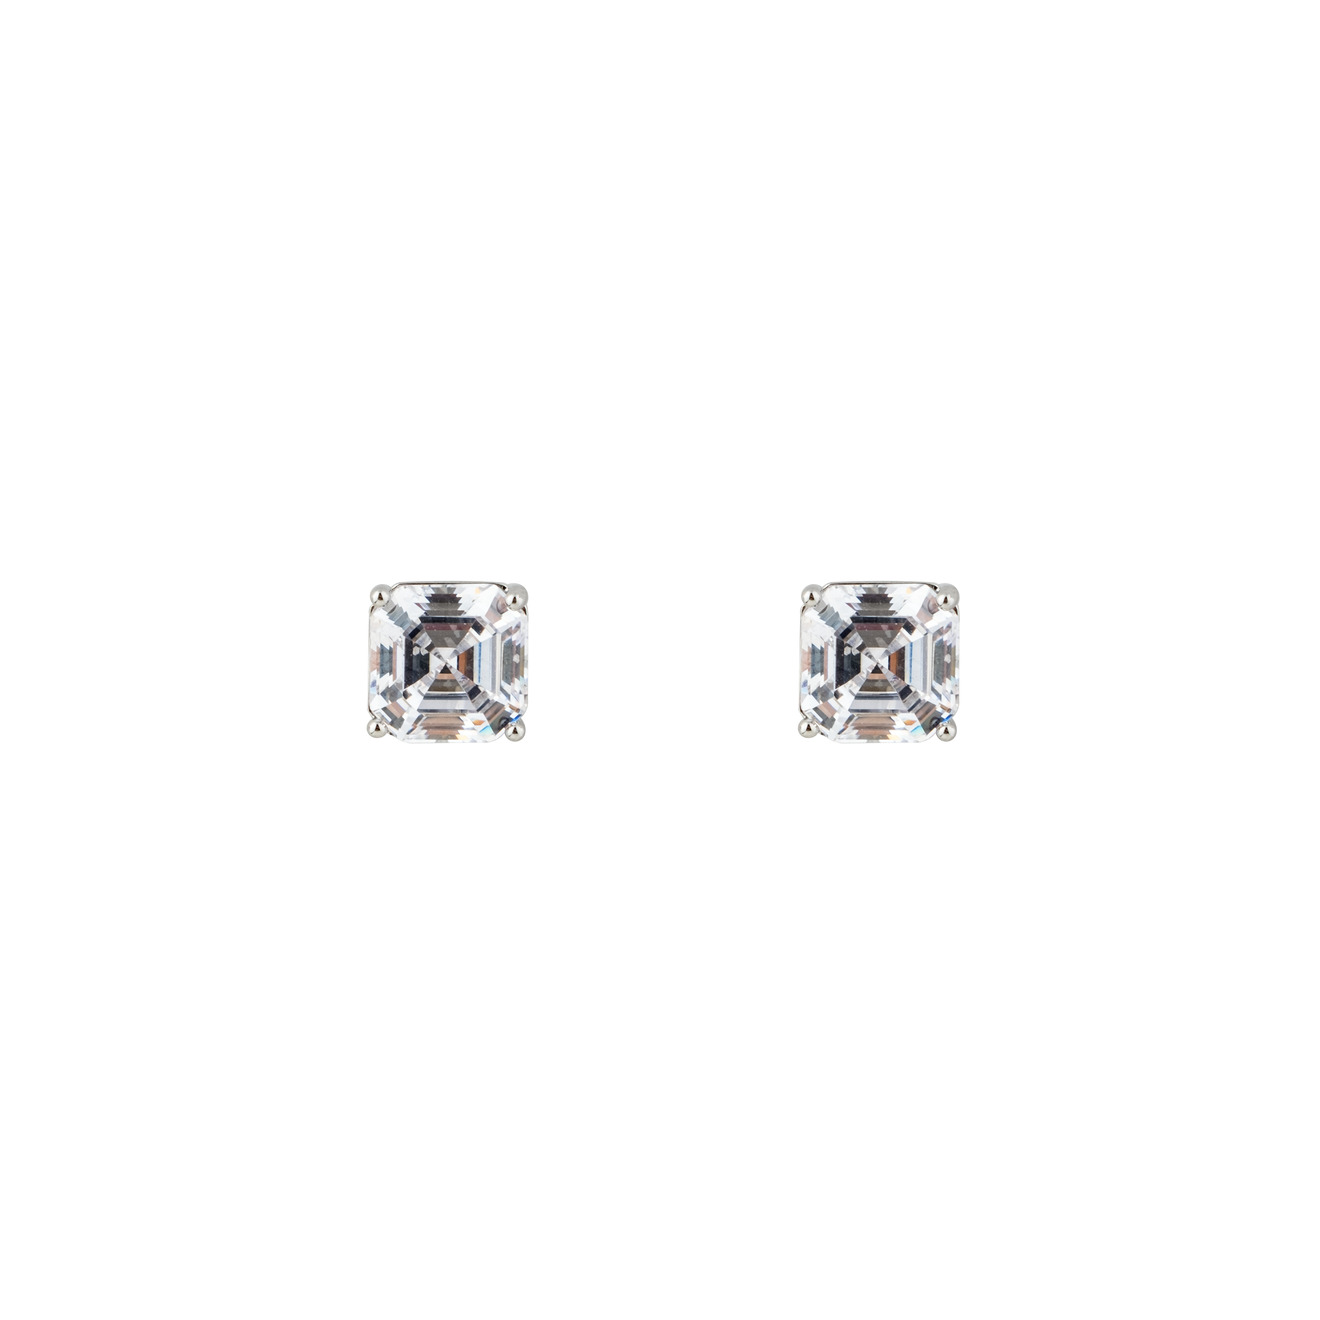 Herald Percy Серебристые серьги с белыми кристаллами herald percy серебристые серьги звезды с кристаллами и белыми бусинами